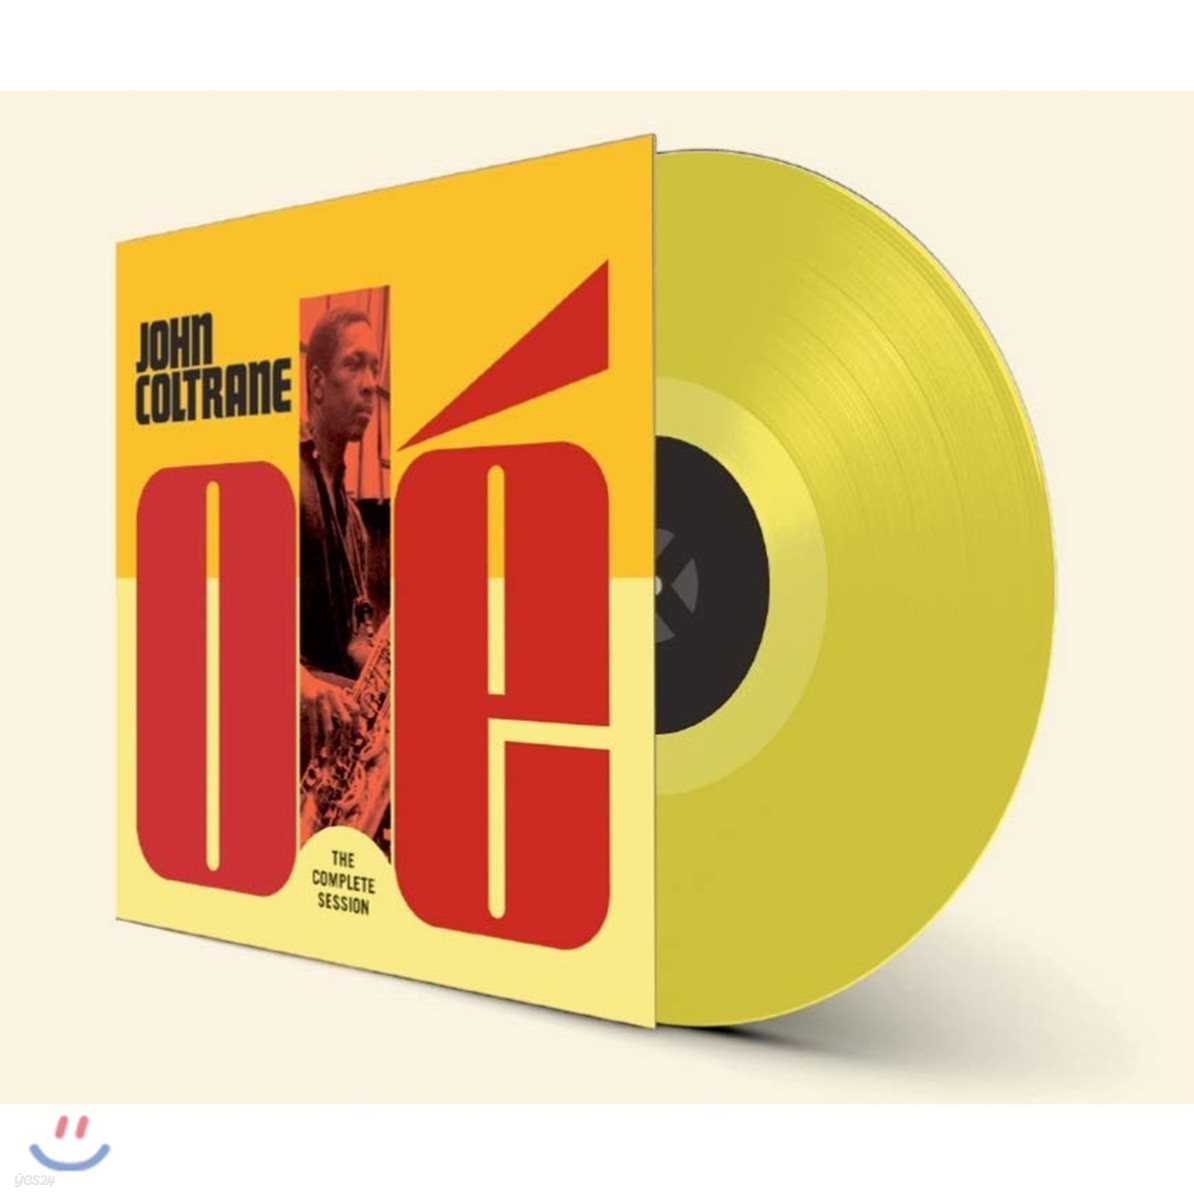 John Coltrane (존 콜트레인) - Ole Coltrane: The Complete Session [옐로우 컬러 LP]